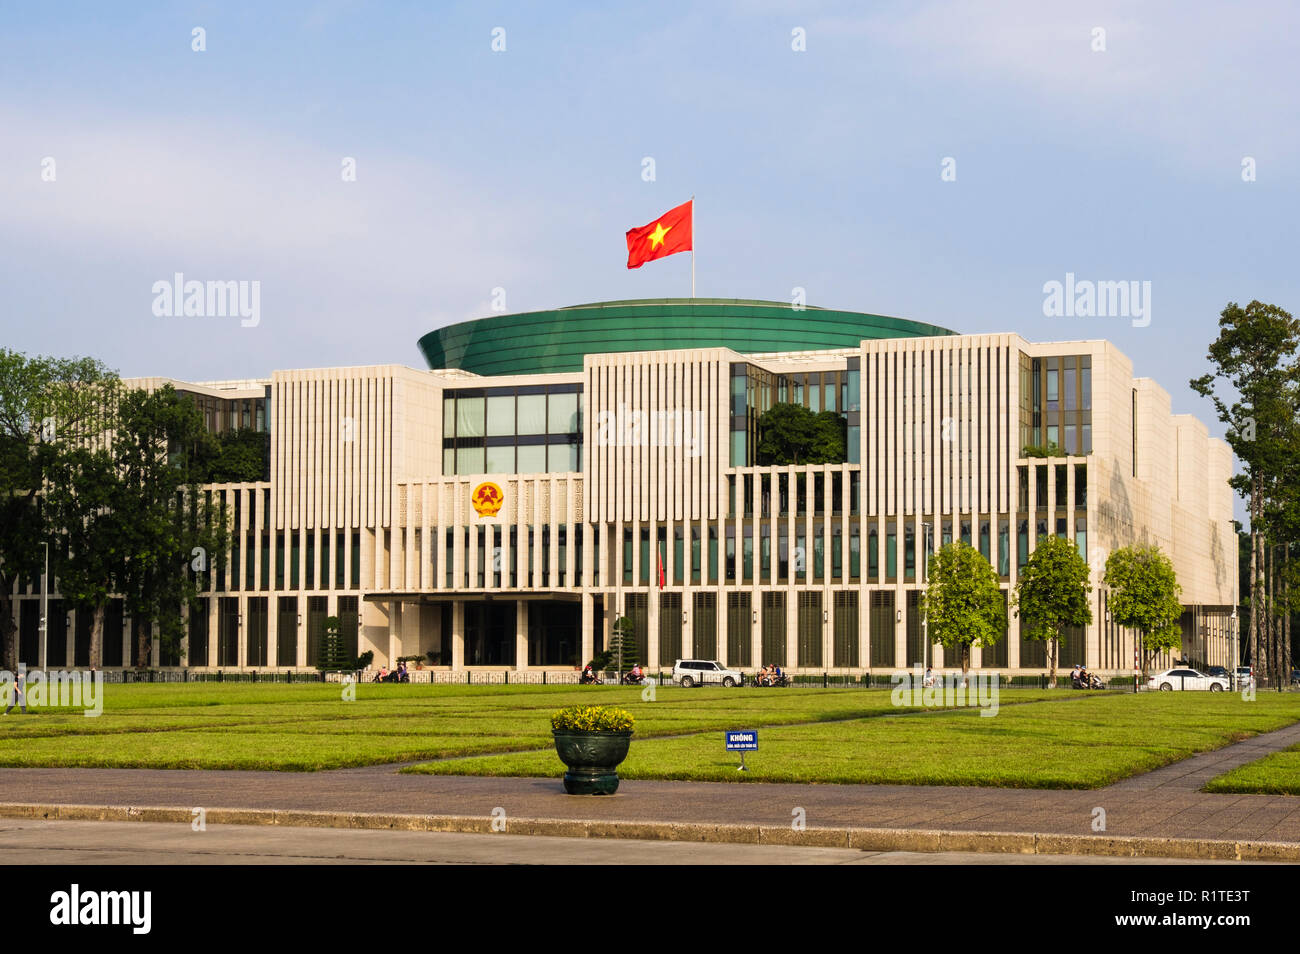 Vietnamesische Flagge auf neuen 21. Jahrhundert moderne Nationale Montage Haus Parlamentsgebäude. Hanoi, Vietnam, Asien Stockfoto